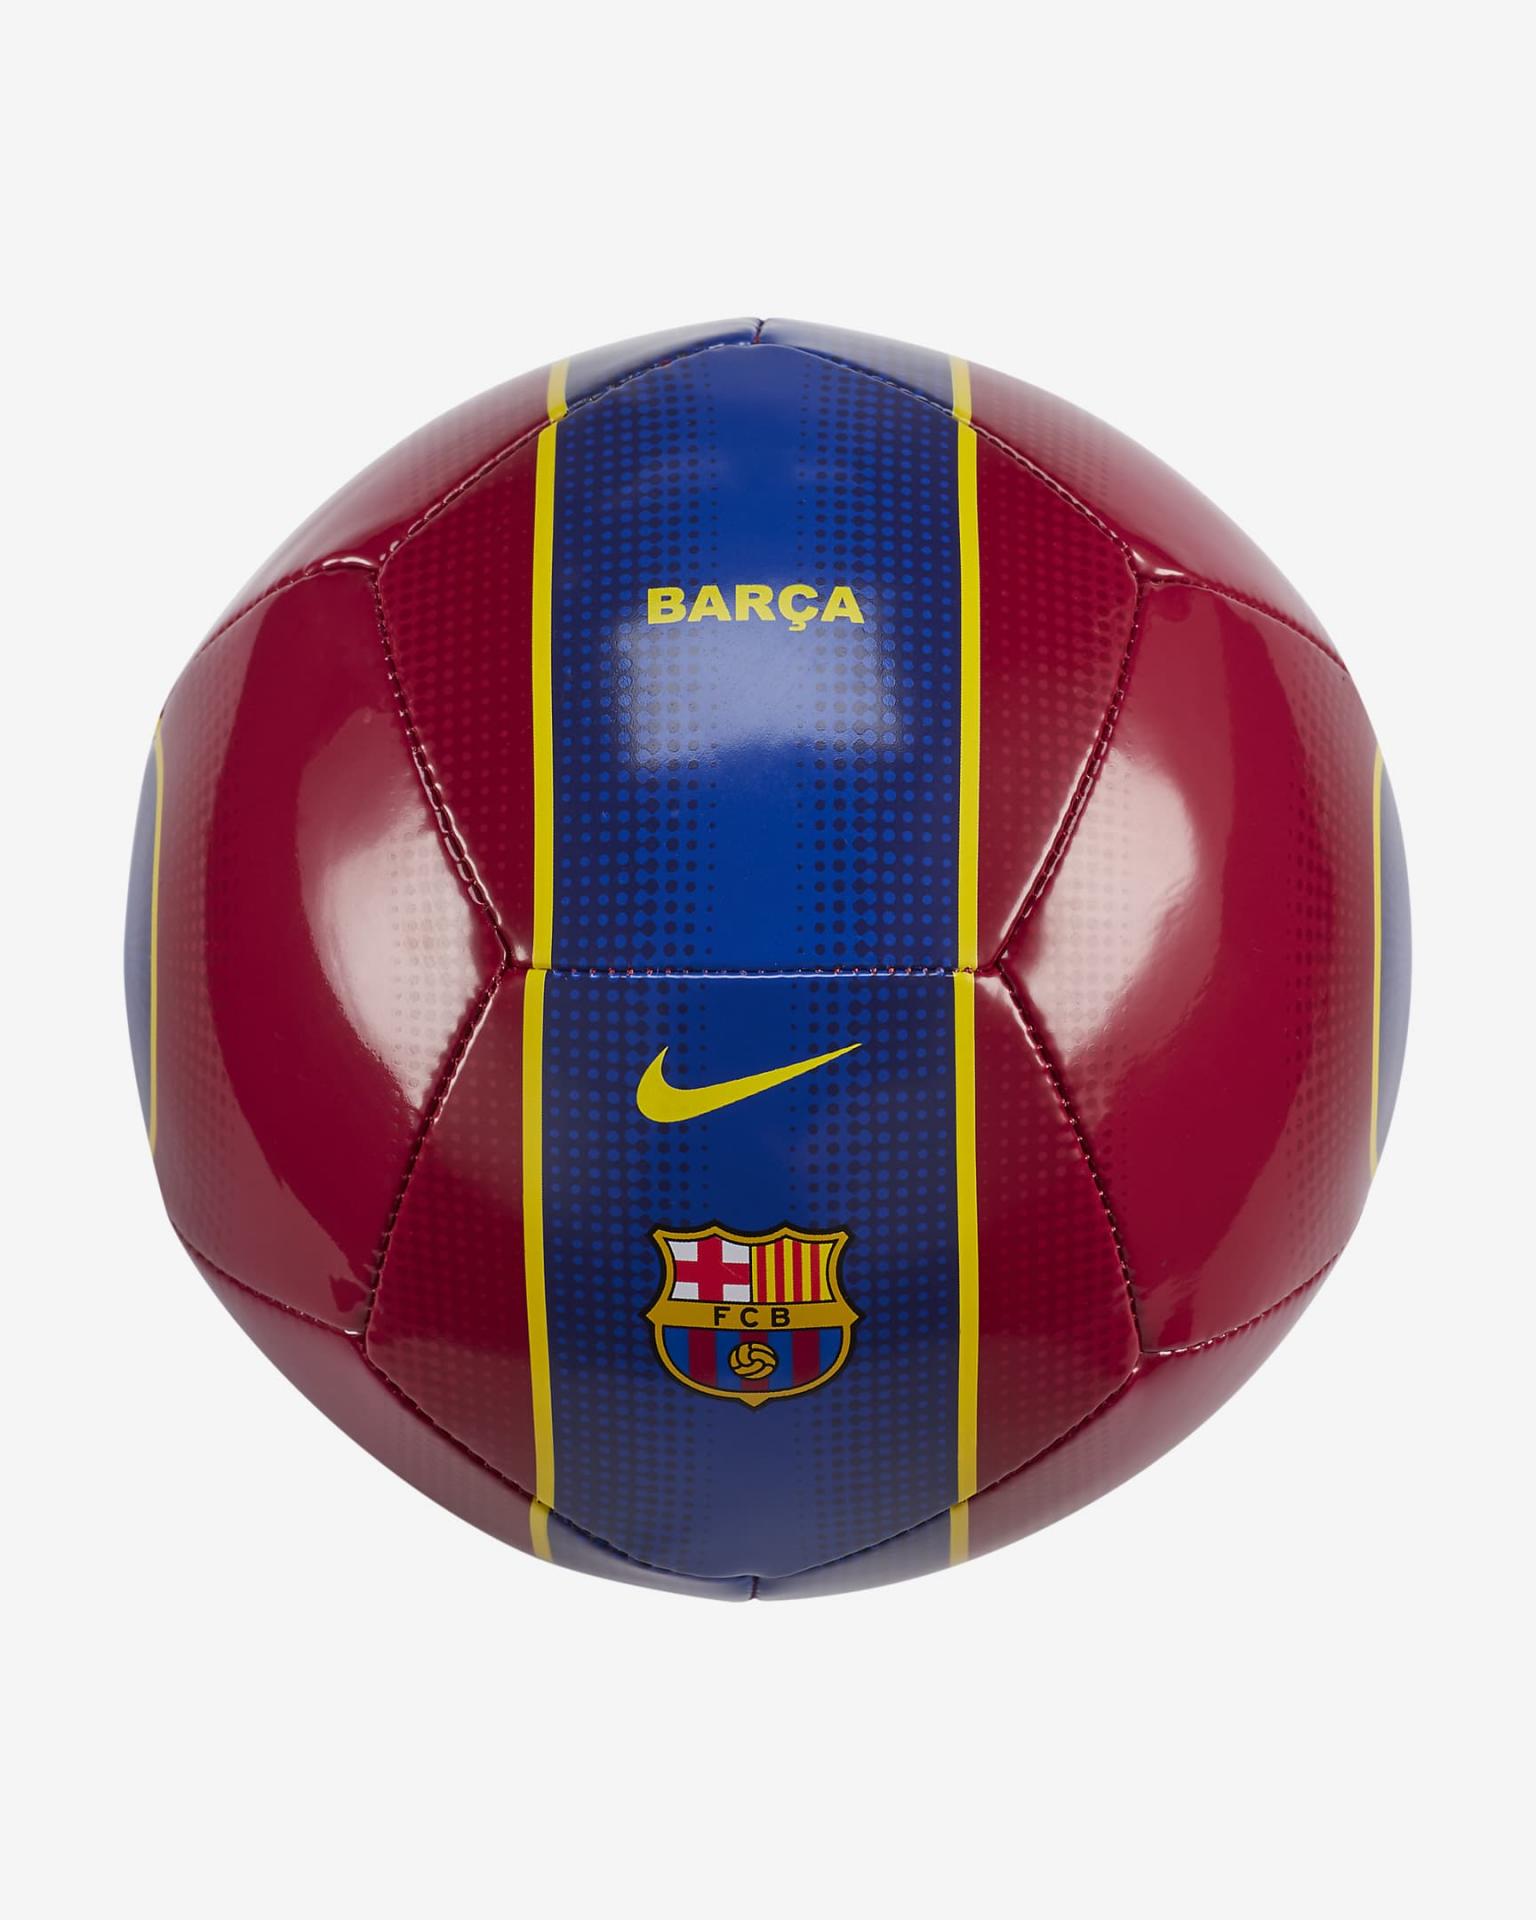 Comprar el nuevo balon Barcelona on line